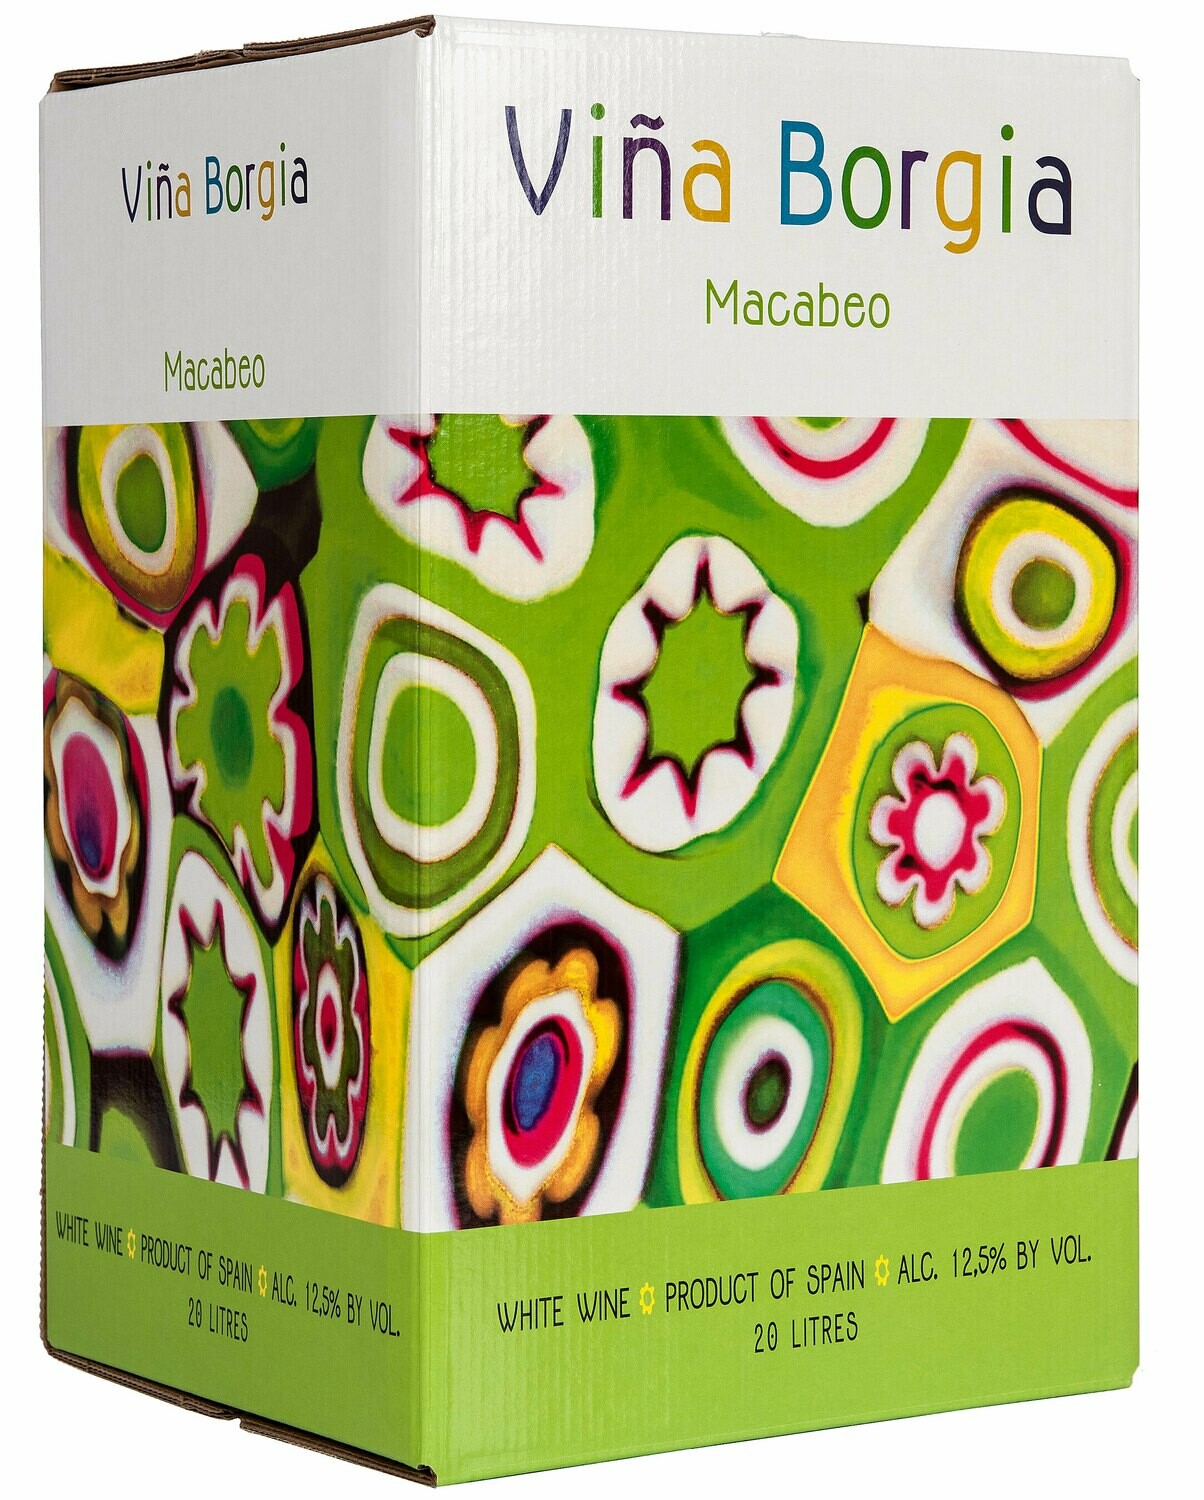 Wine / White / Vina Borgia Macabeo 2017, 3 liter box